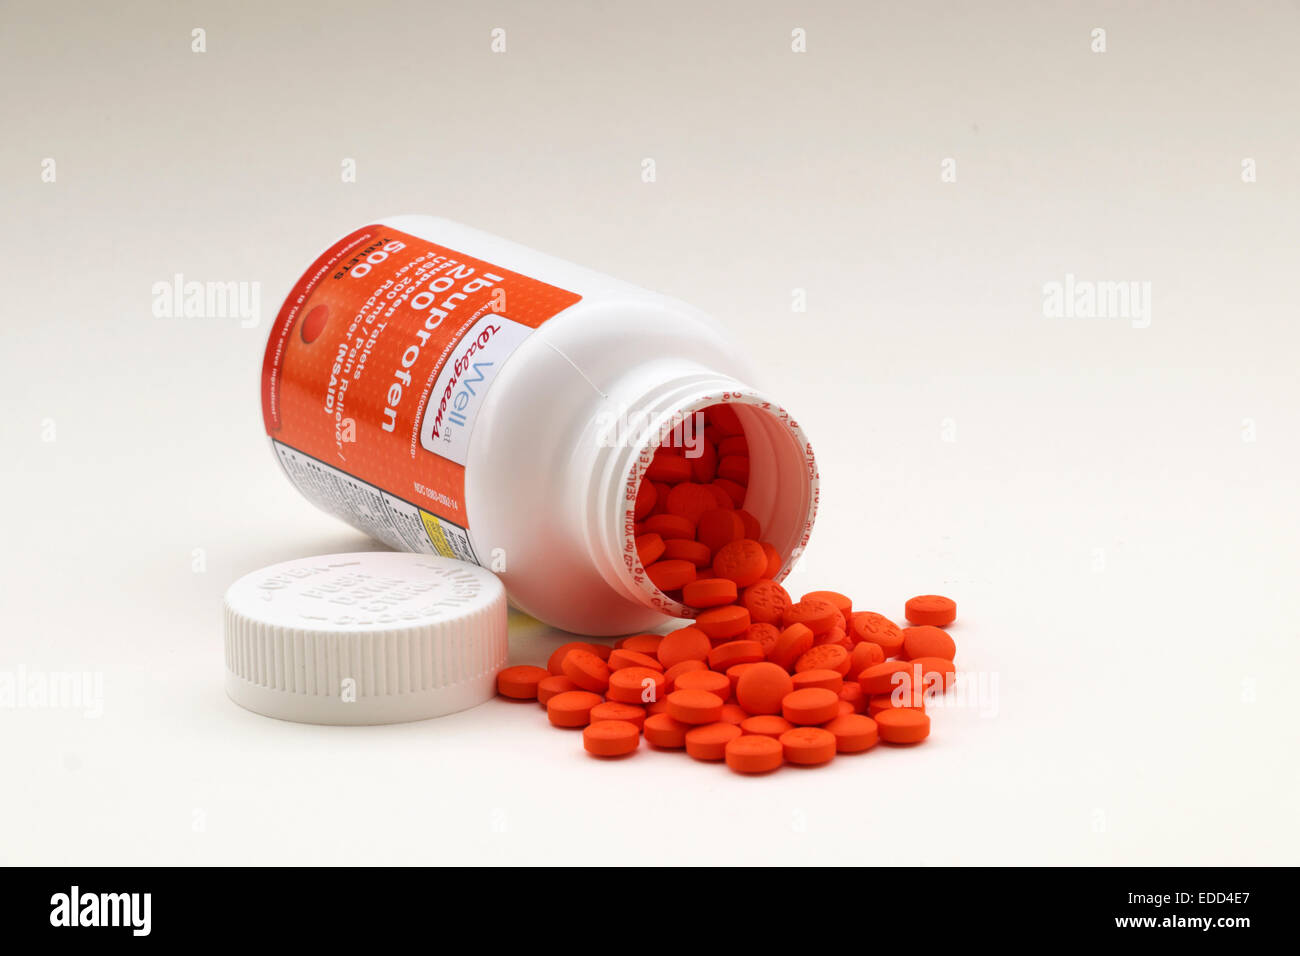 Una bottiglia di generici (marchio Walgreen) Ibuprofene 200 mg. compresse visualizzati su uno sfondo bianco. Foto Stock